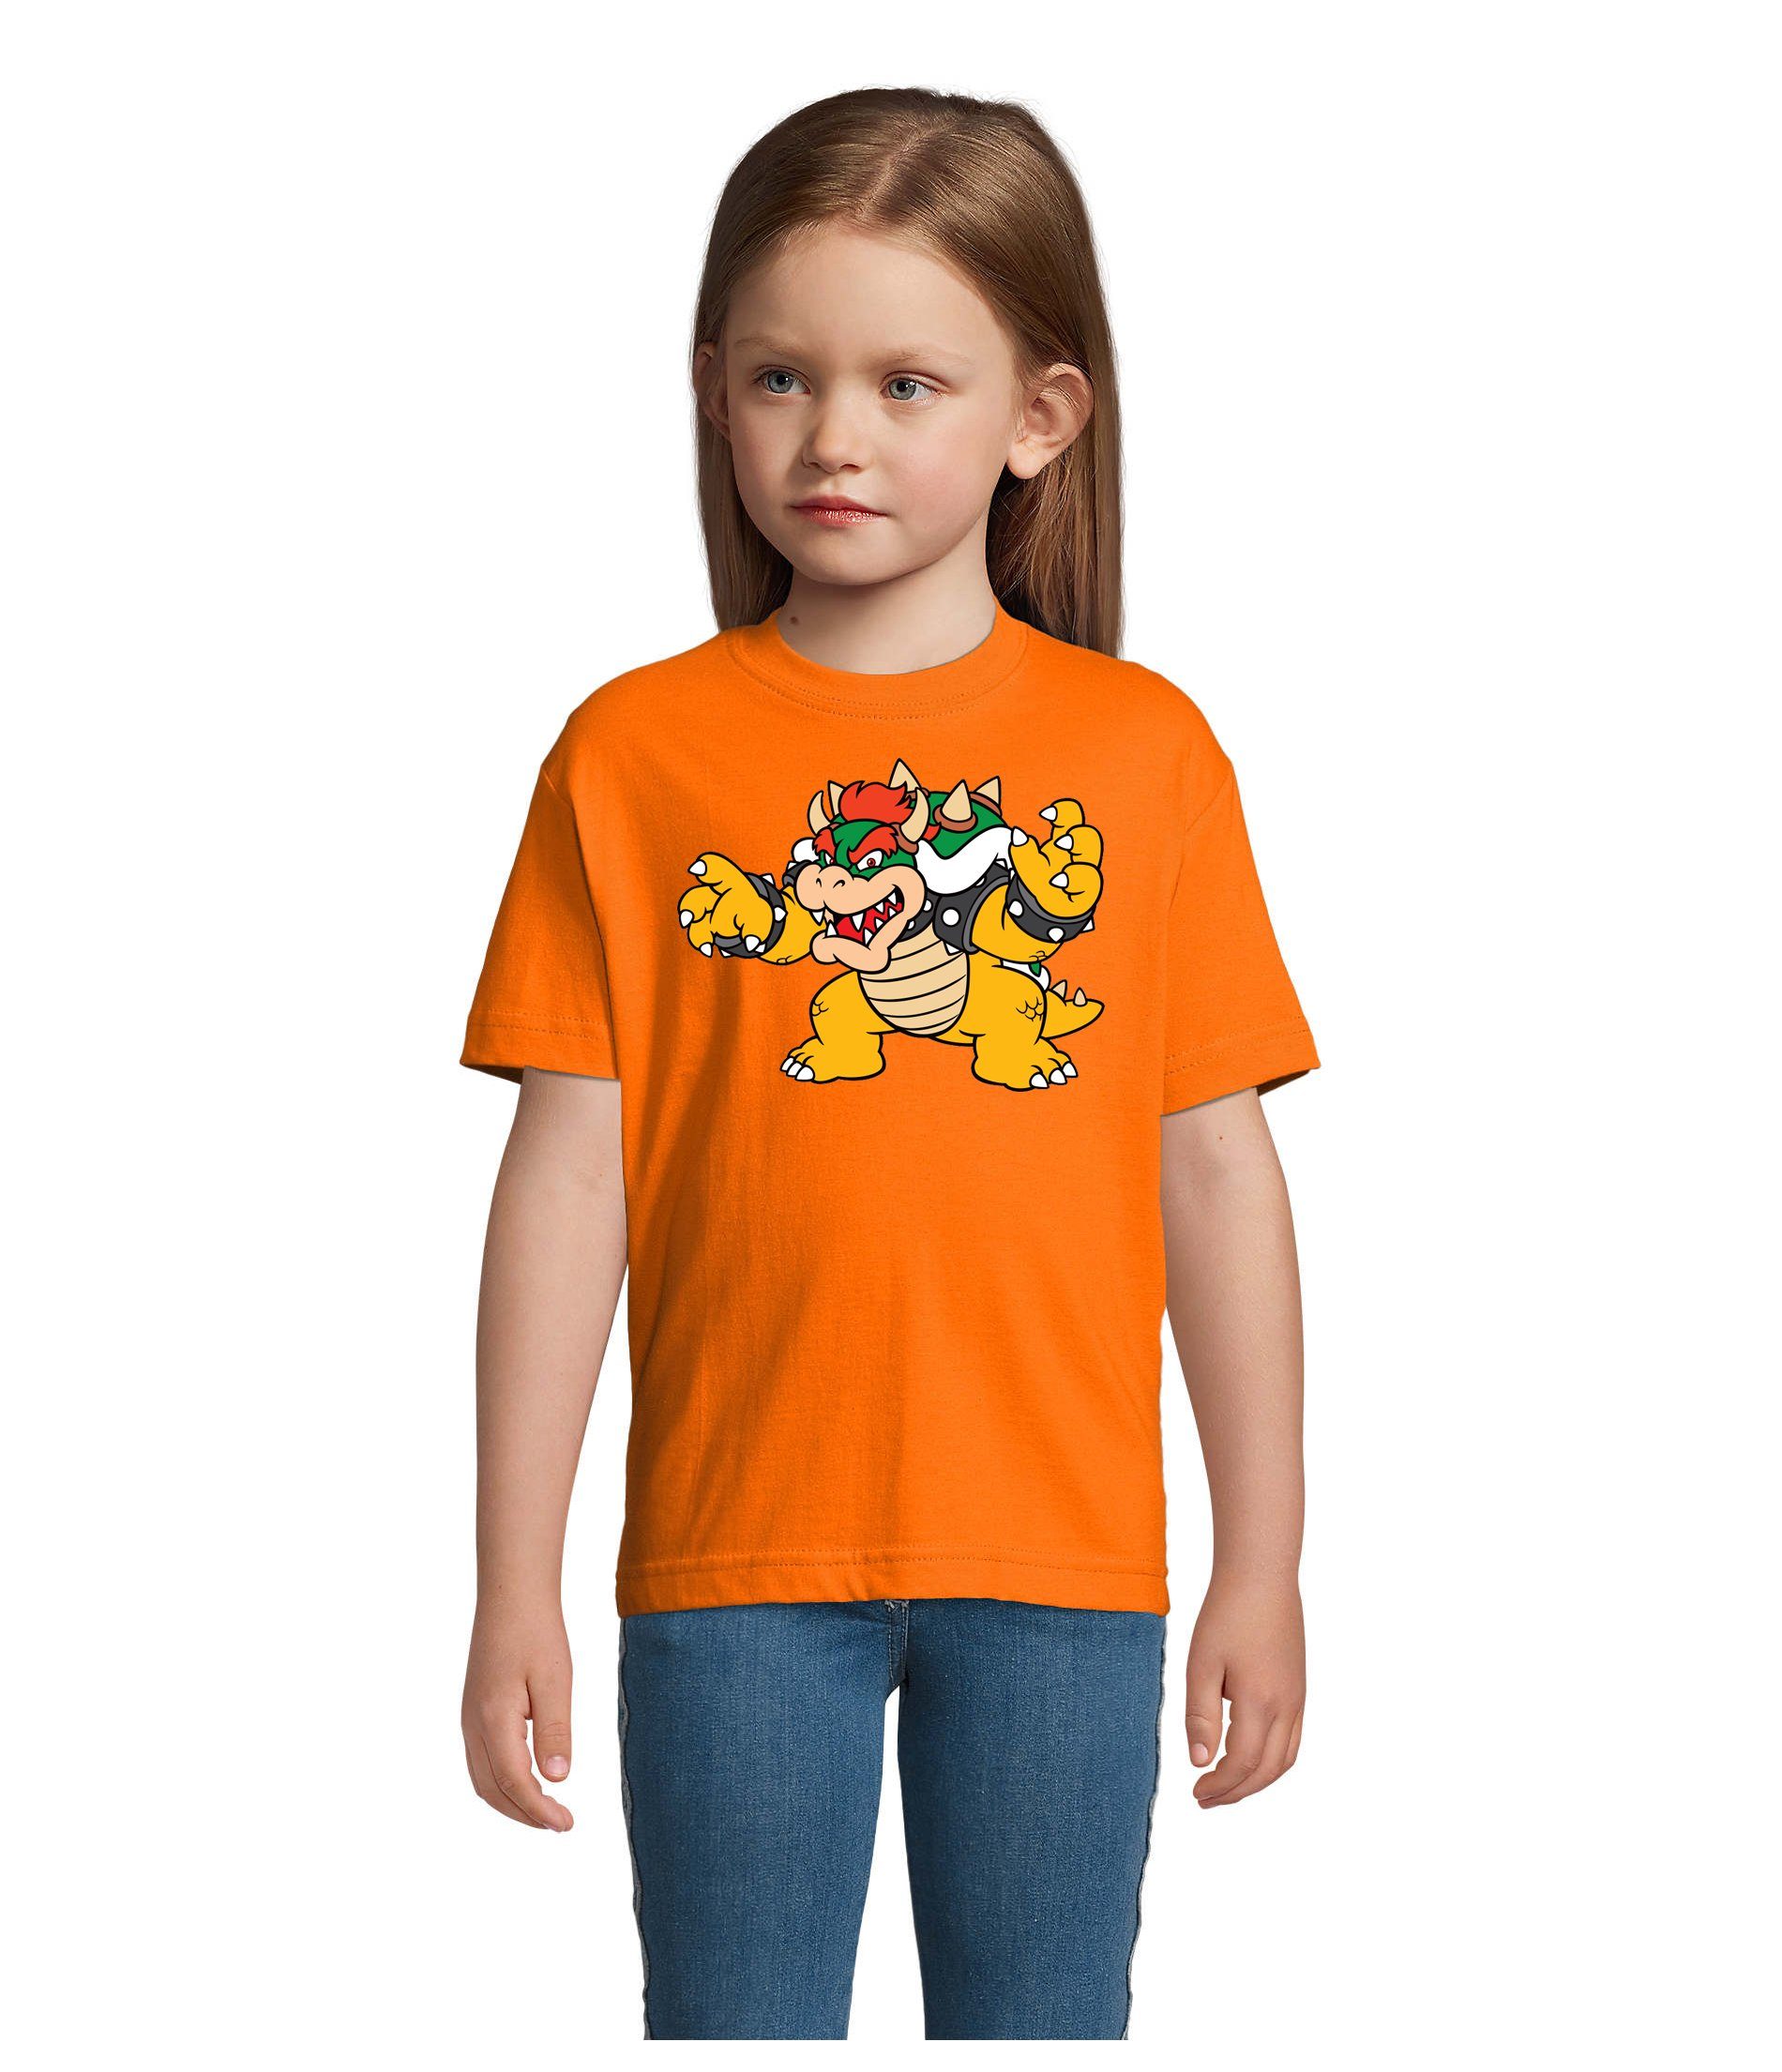 Konsole Orange T-Shirt Blondie Luigi Bowser Kinder Nintendo & Yoshi Game Brownie Gamer Mario